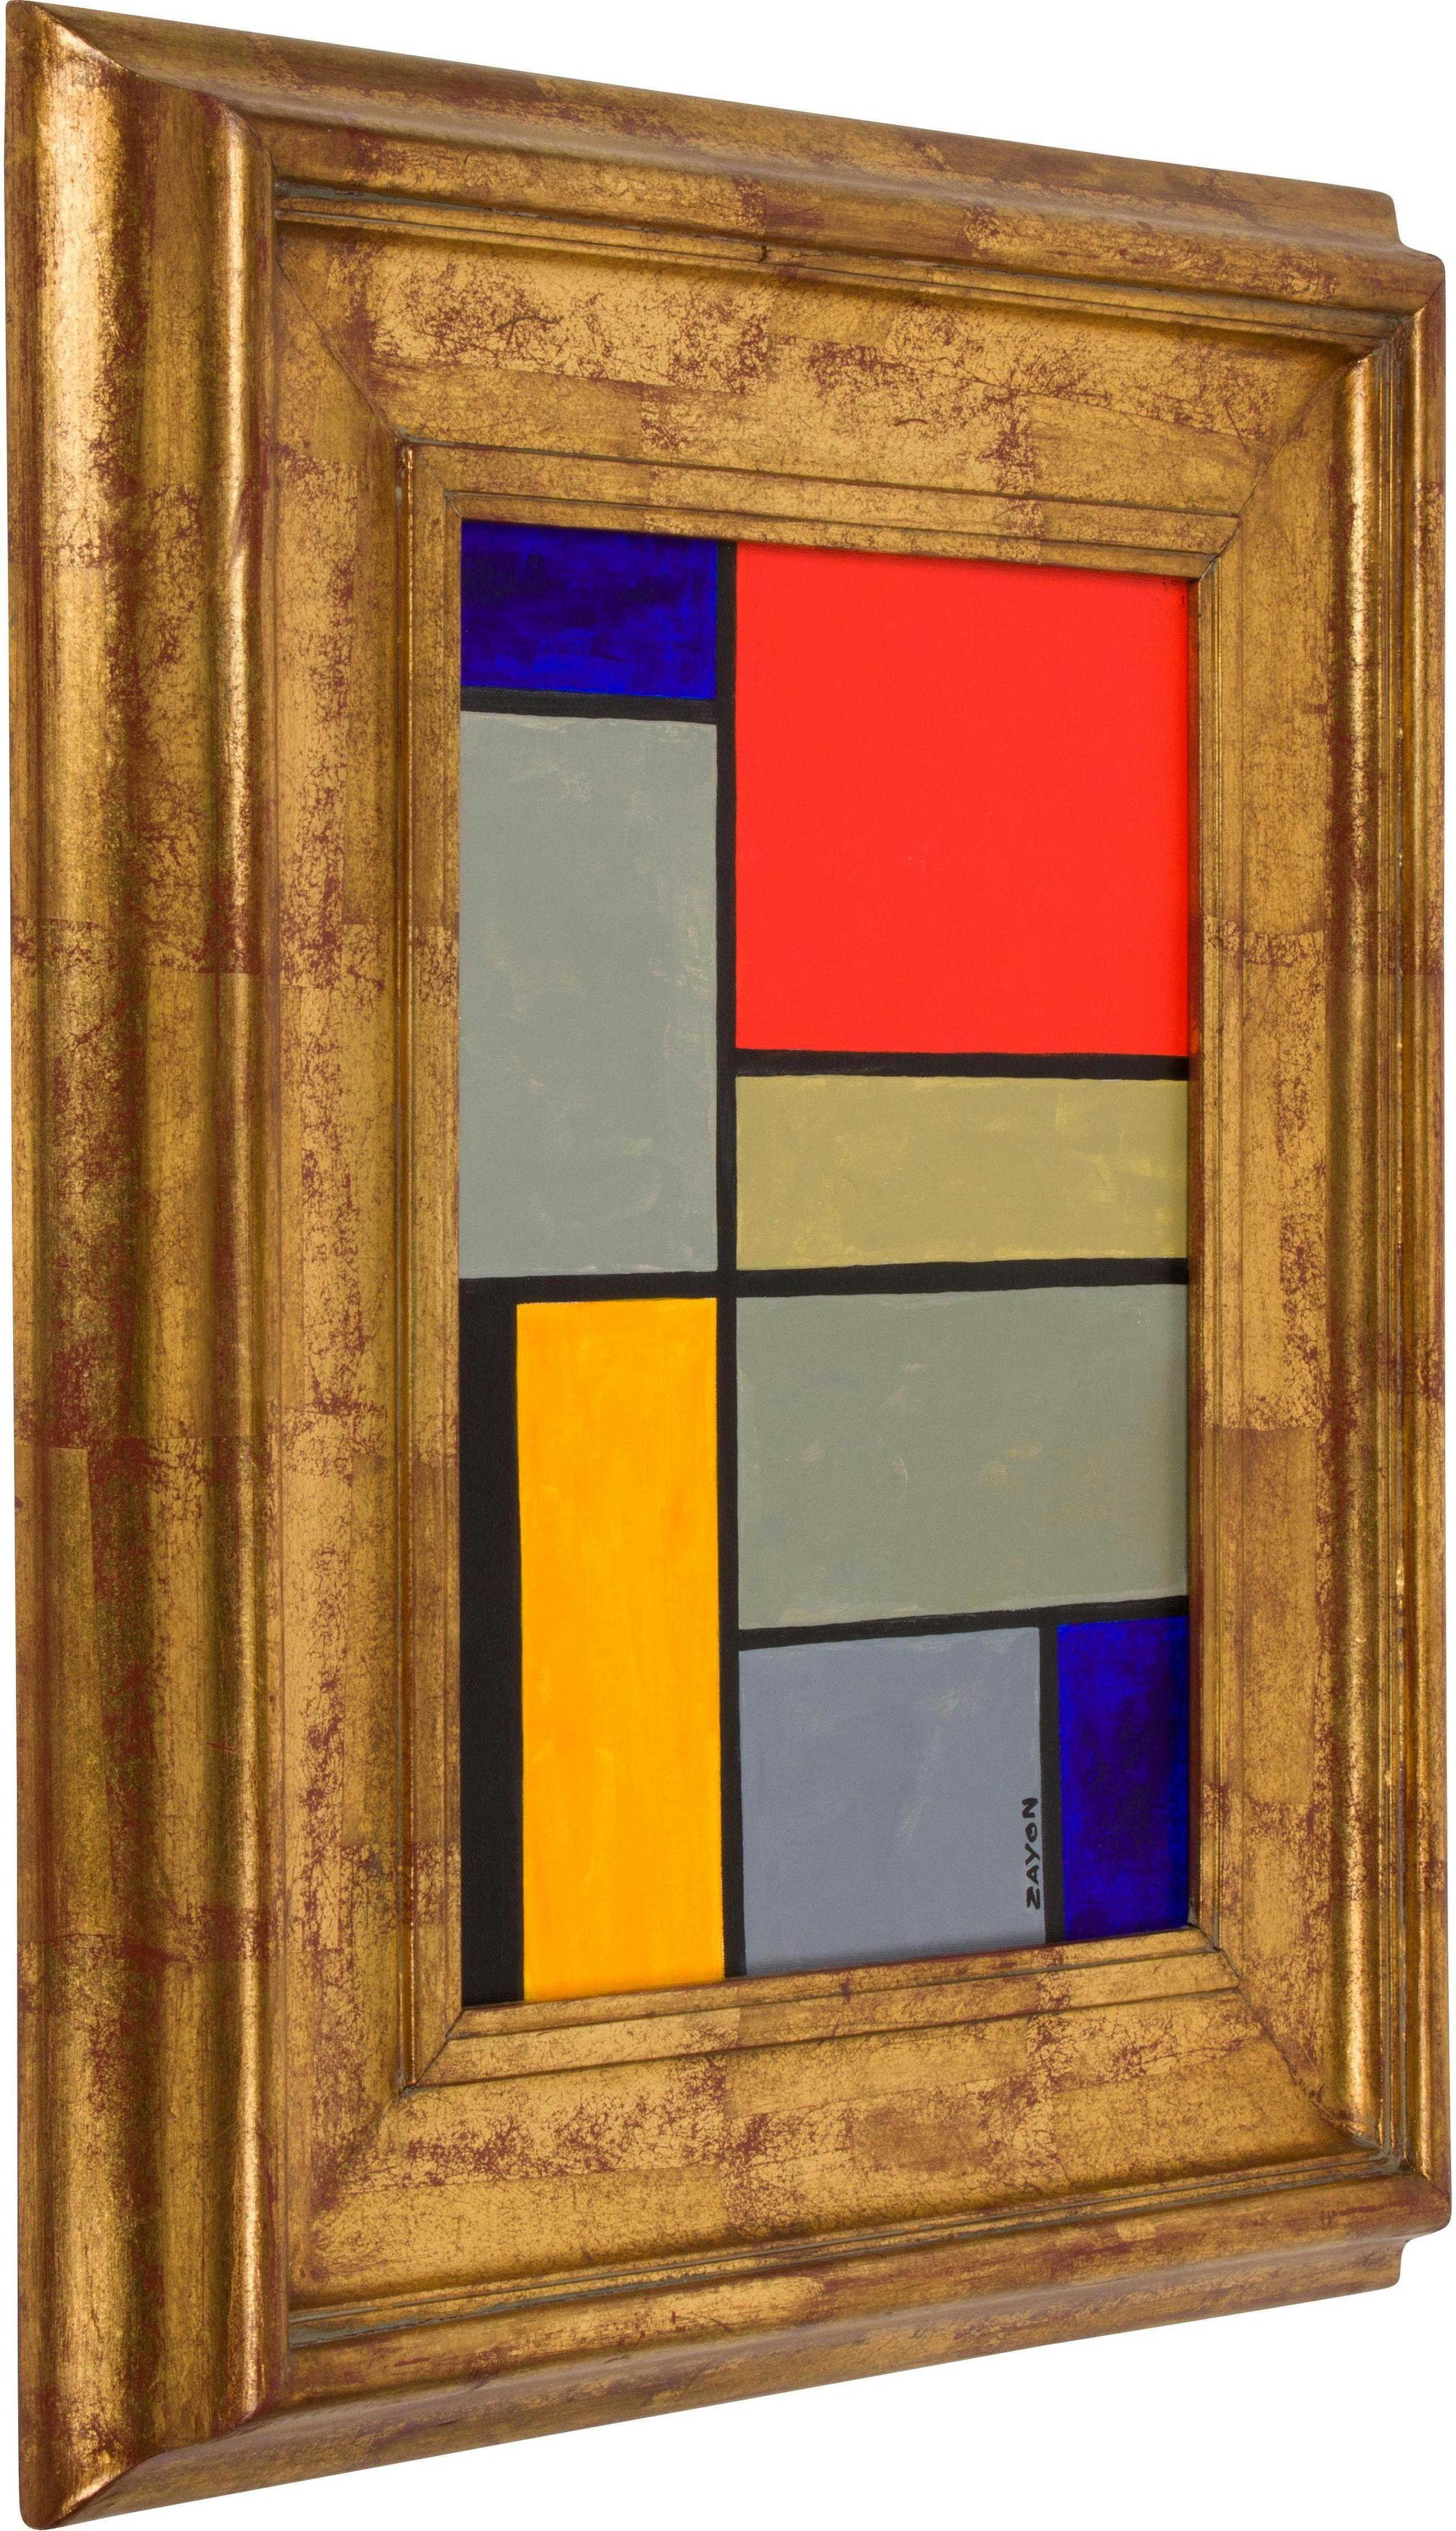 Huile abstraite géométrique colorée sur panneau de l'artiste bien connu Seymour Zayon.

Seymour Zayon, né en 1930, est un peintre contemporain de la région de Philadelphie connu pour ses compositions abstraites géométriques colorées, ses